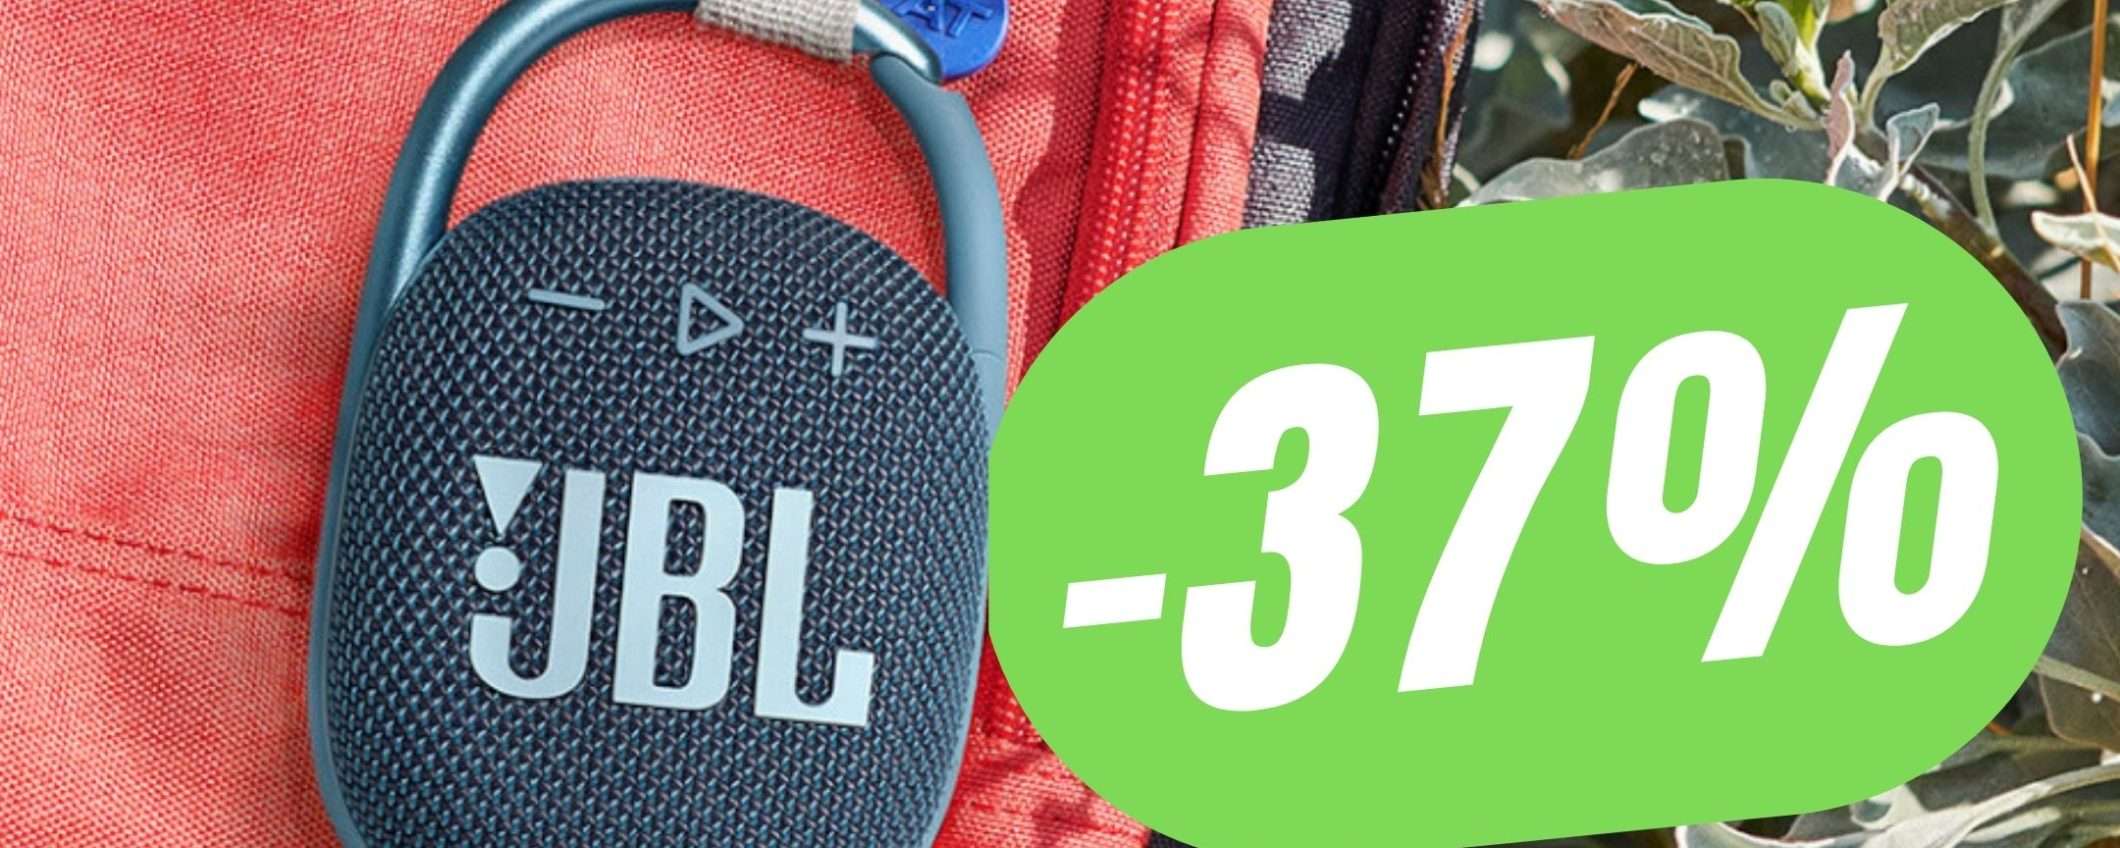 La mini CASSA Bluetooth di JBL (scontata del -37%!) è il regalo perfetto